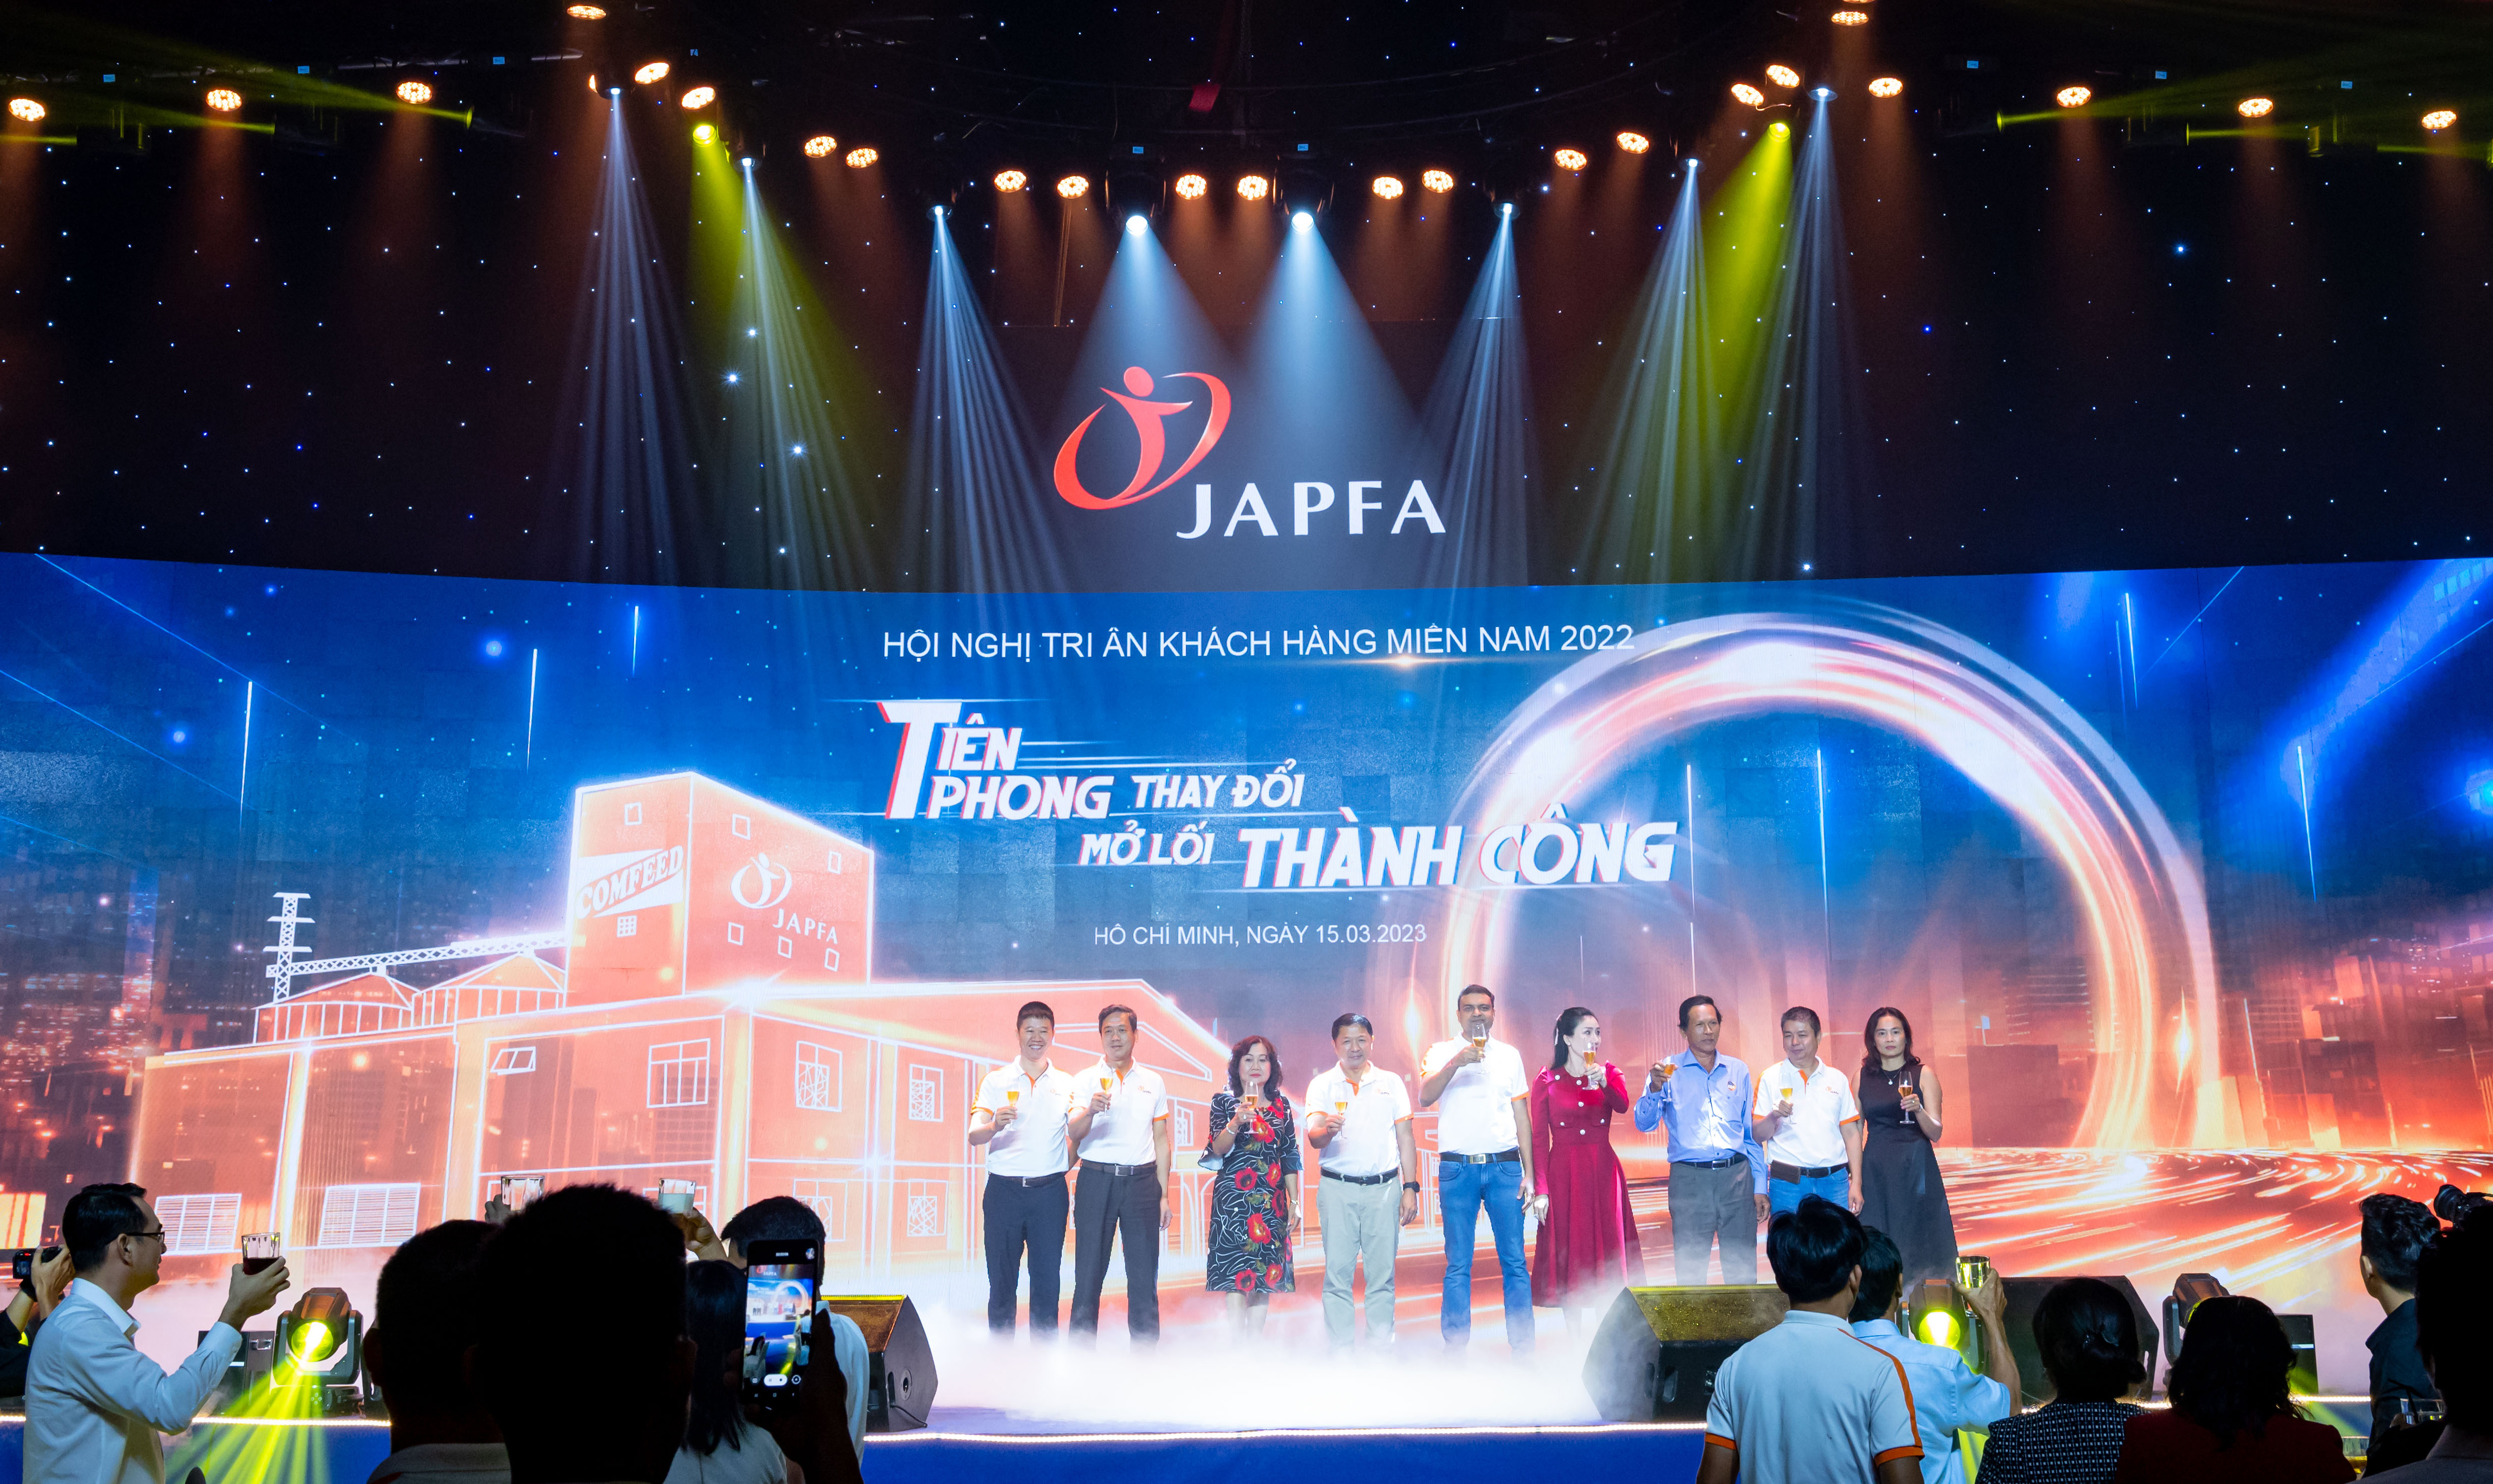 Sự kiện với sự tham dự của gần 300 khách mời là đối tác kinh doanh thức ăn chăn nuôi của Japfa được tổ chức tại TP. Hồ Chí Minh ngày 15/3.